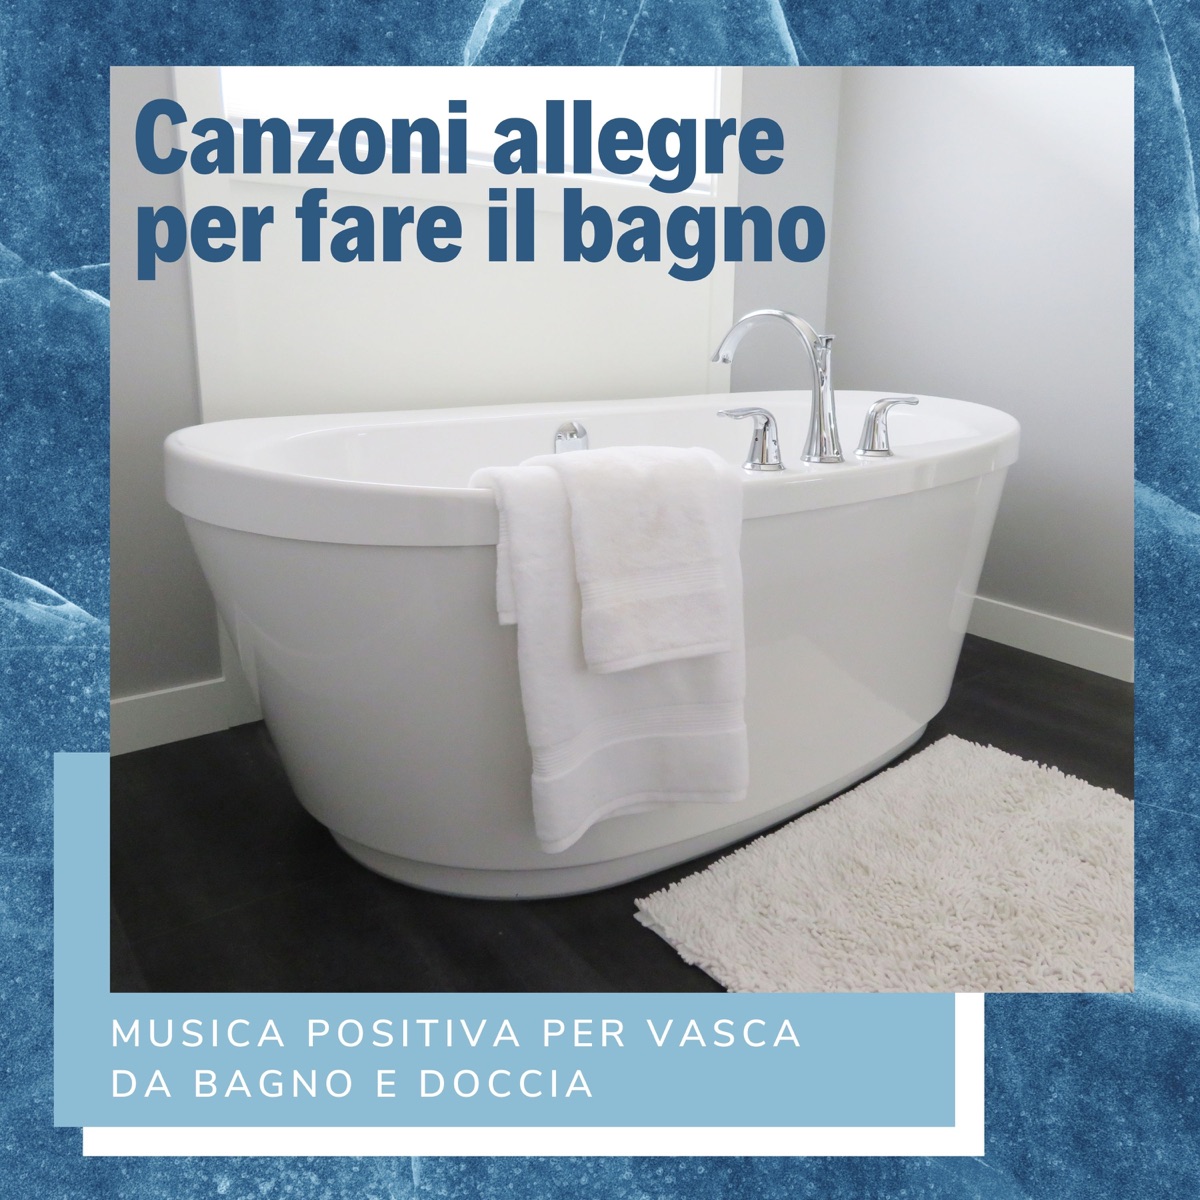 Canzoni allegre per fare il bagno - Musica positiva per vasca da bagno e  doccia - Album by Ennio Morello - Apple Music